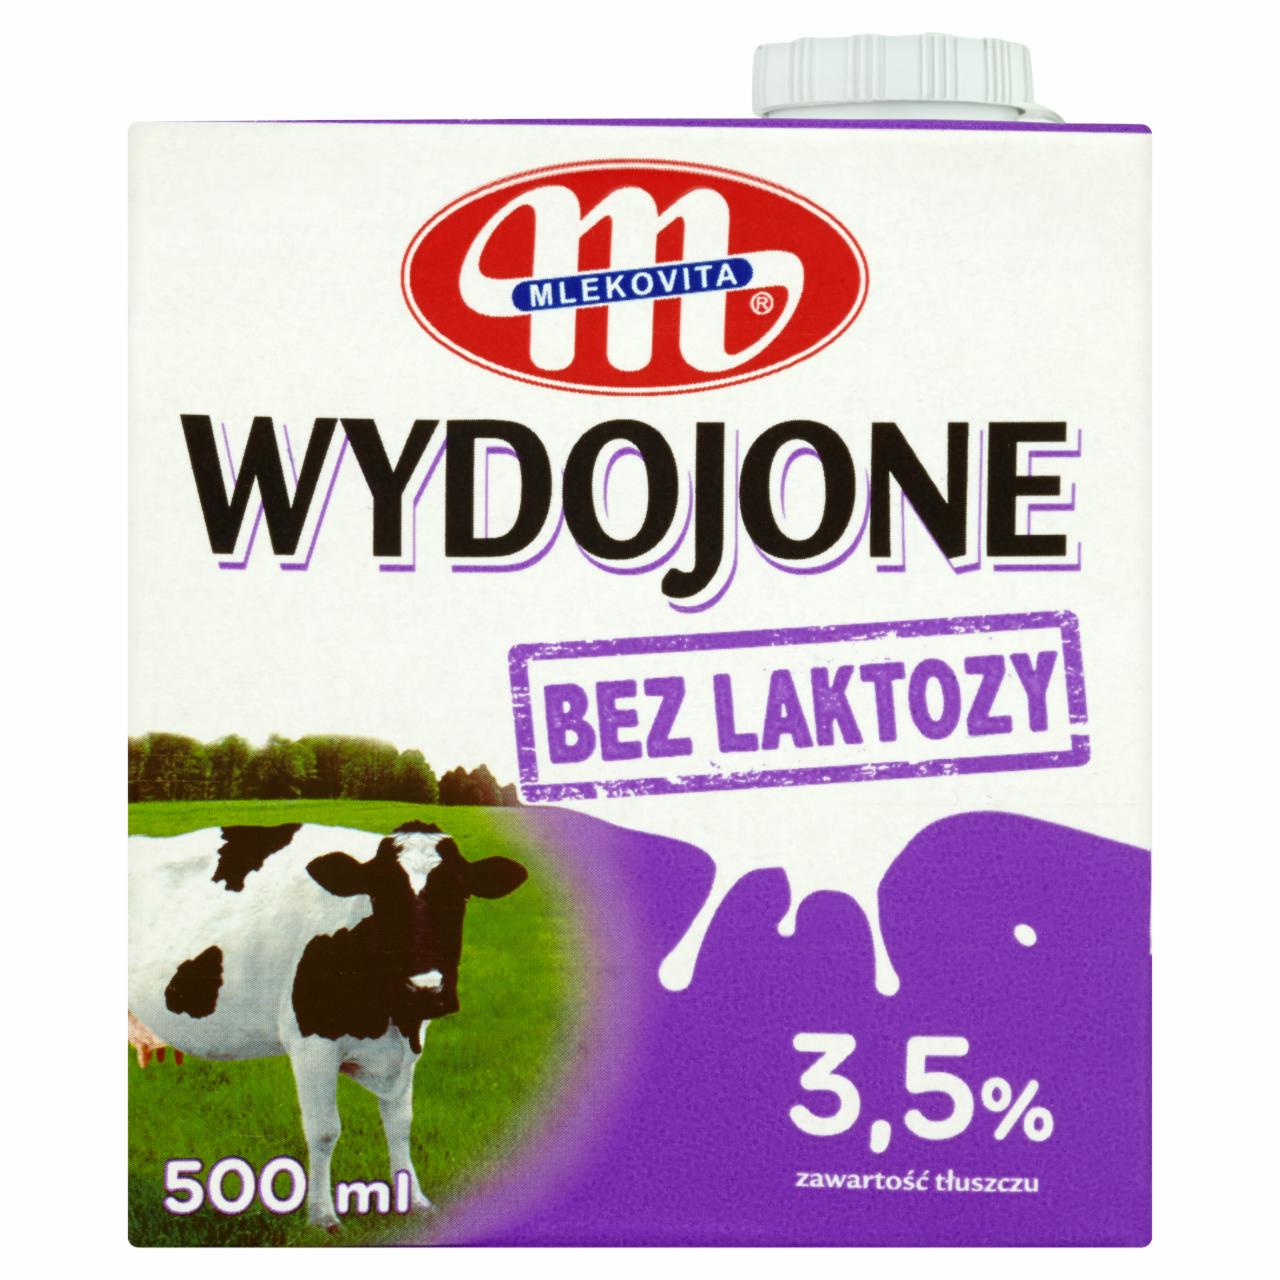 Zdjęcia - Mlekovita Wydojone Mleko bez laktozy 3,5% 500 ml